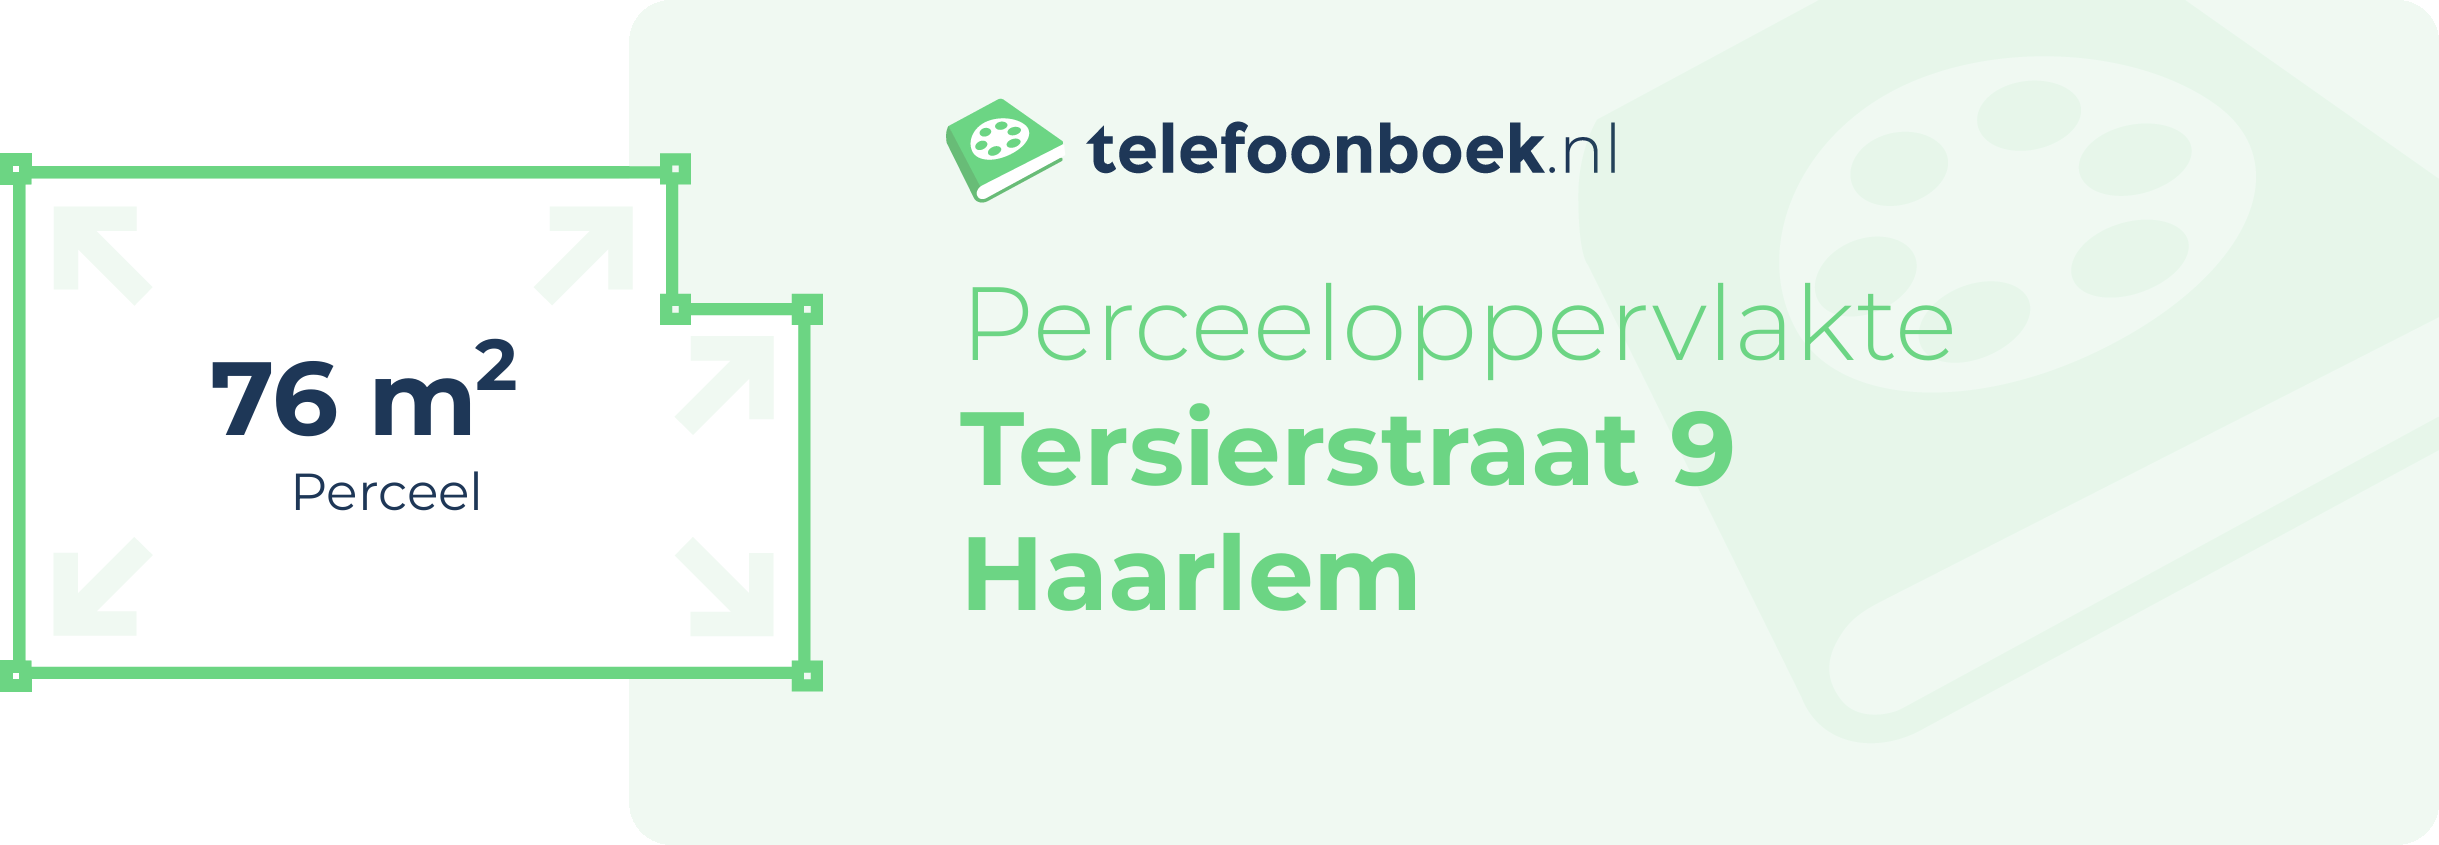 Perceeloppervlakte Tersierstraat 9 Haarlem